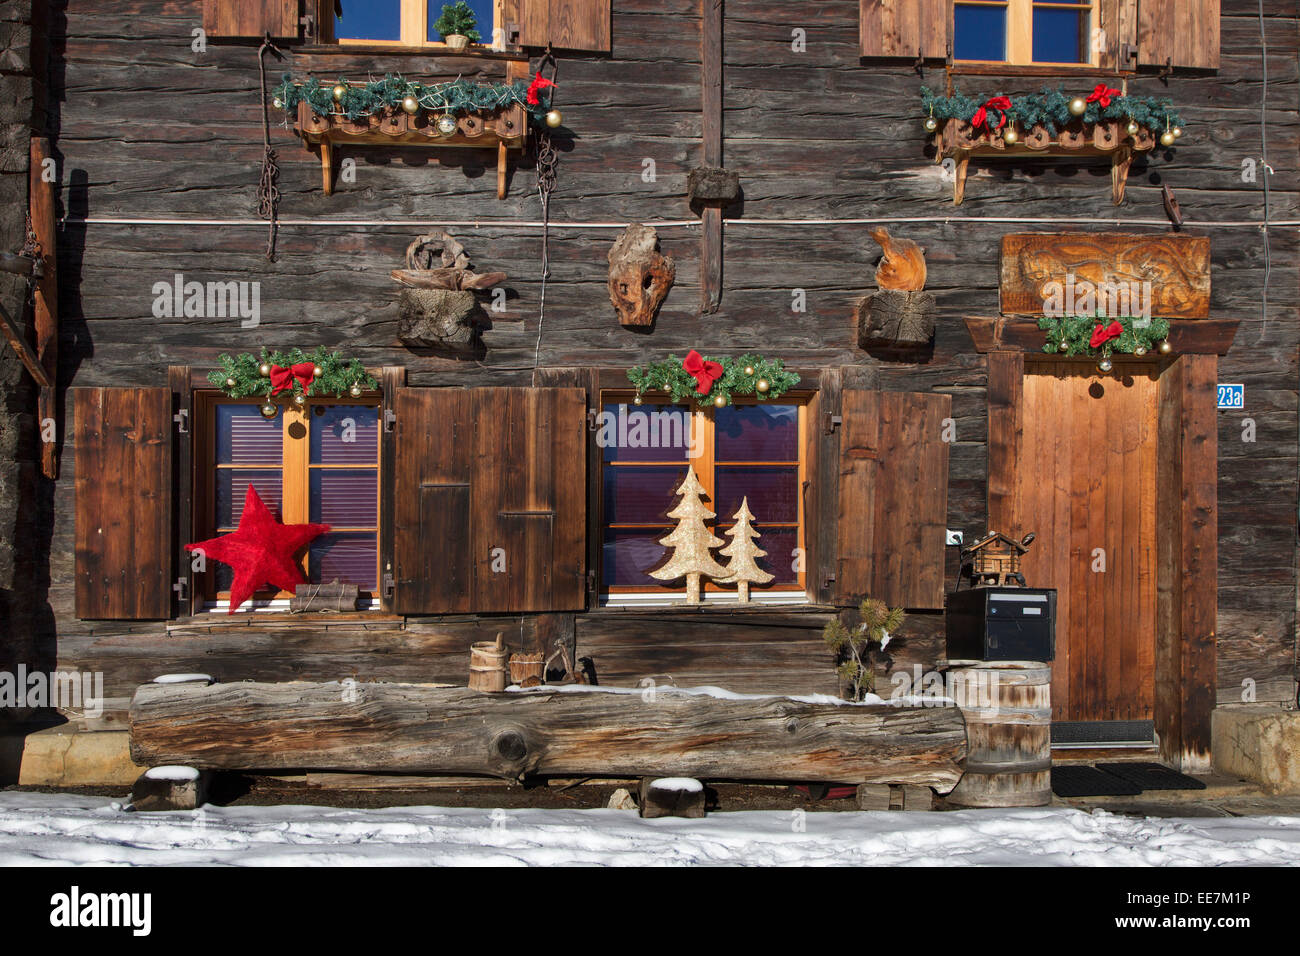 Weihnachtsschmuck Dekoration Schweizer Holz-Chalet in den Alpen im Winter,  Wallis / Valais, Schweiz Stockfotografie - Alamy